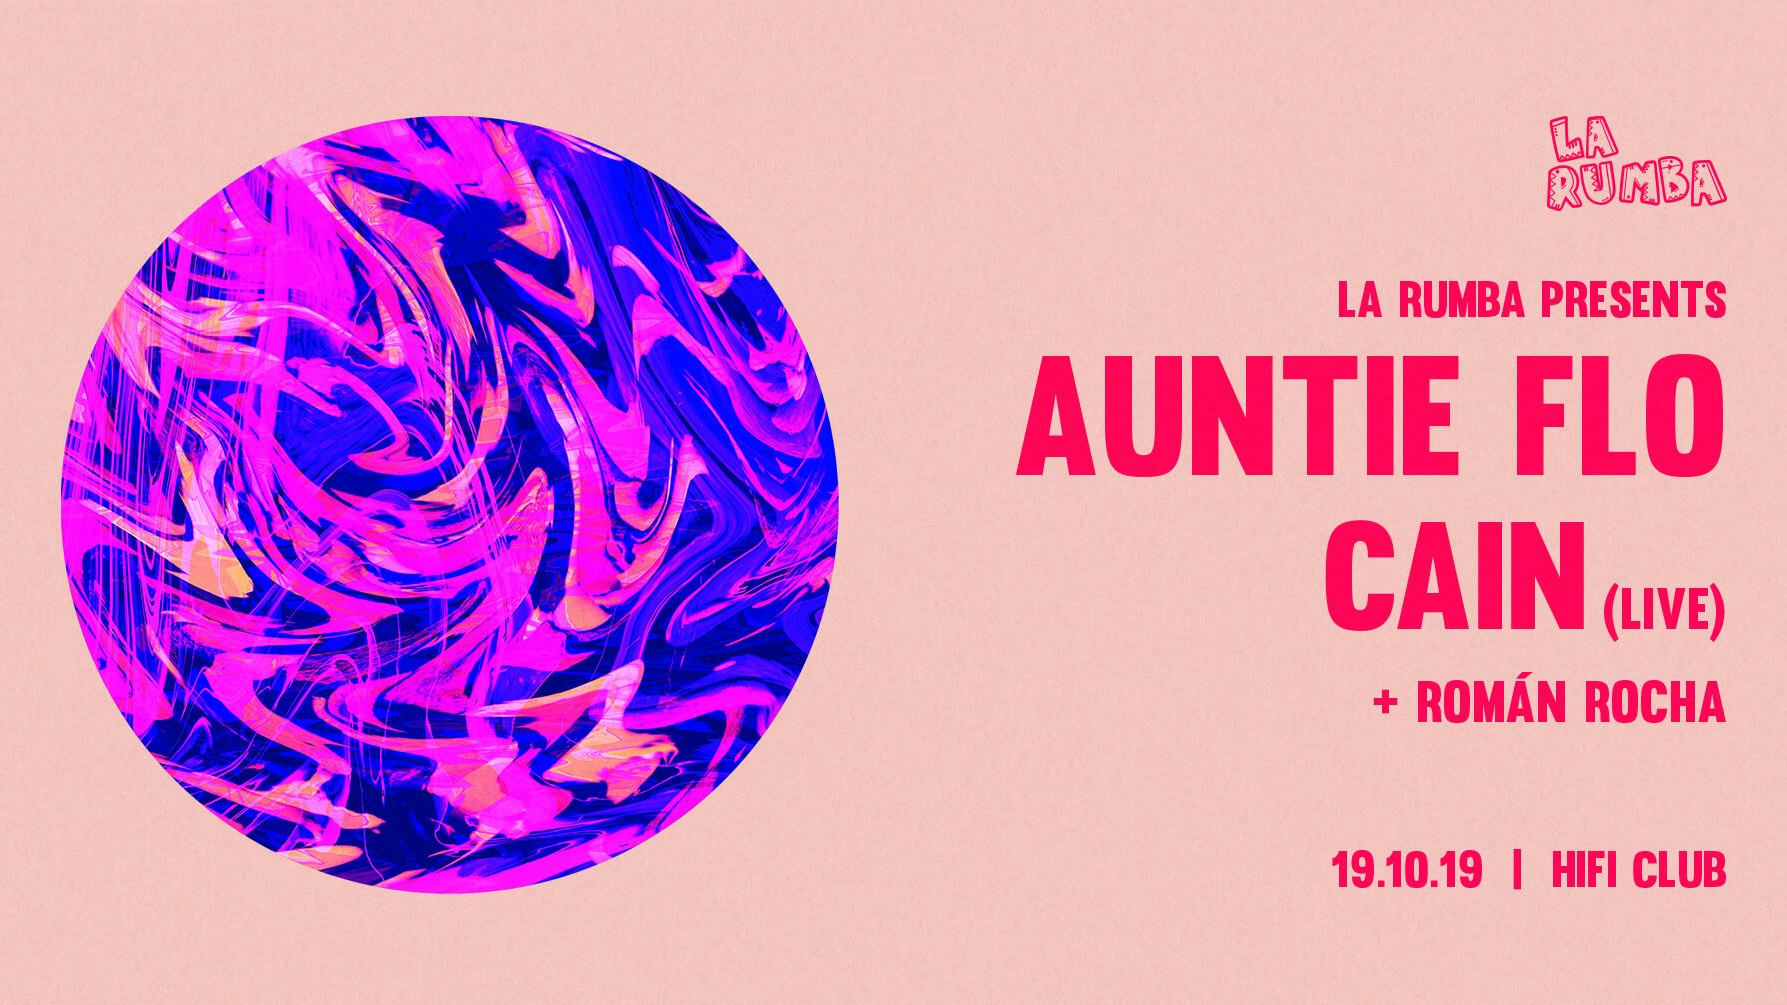 La Rumba: Auntie Flo, CAIN (Live)